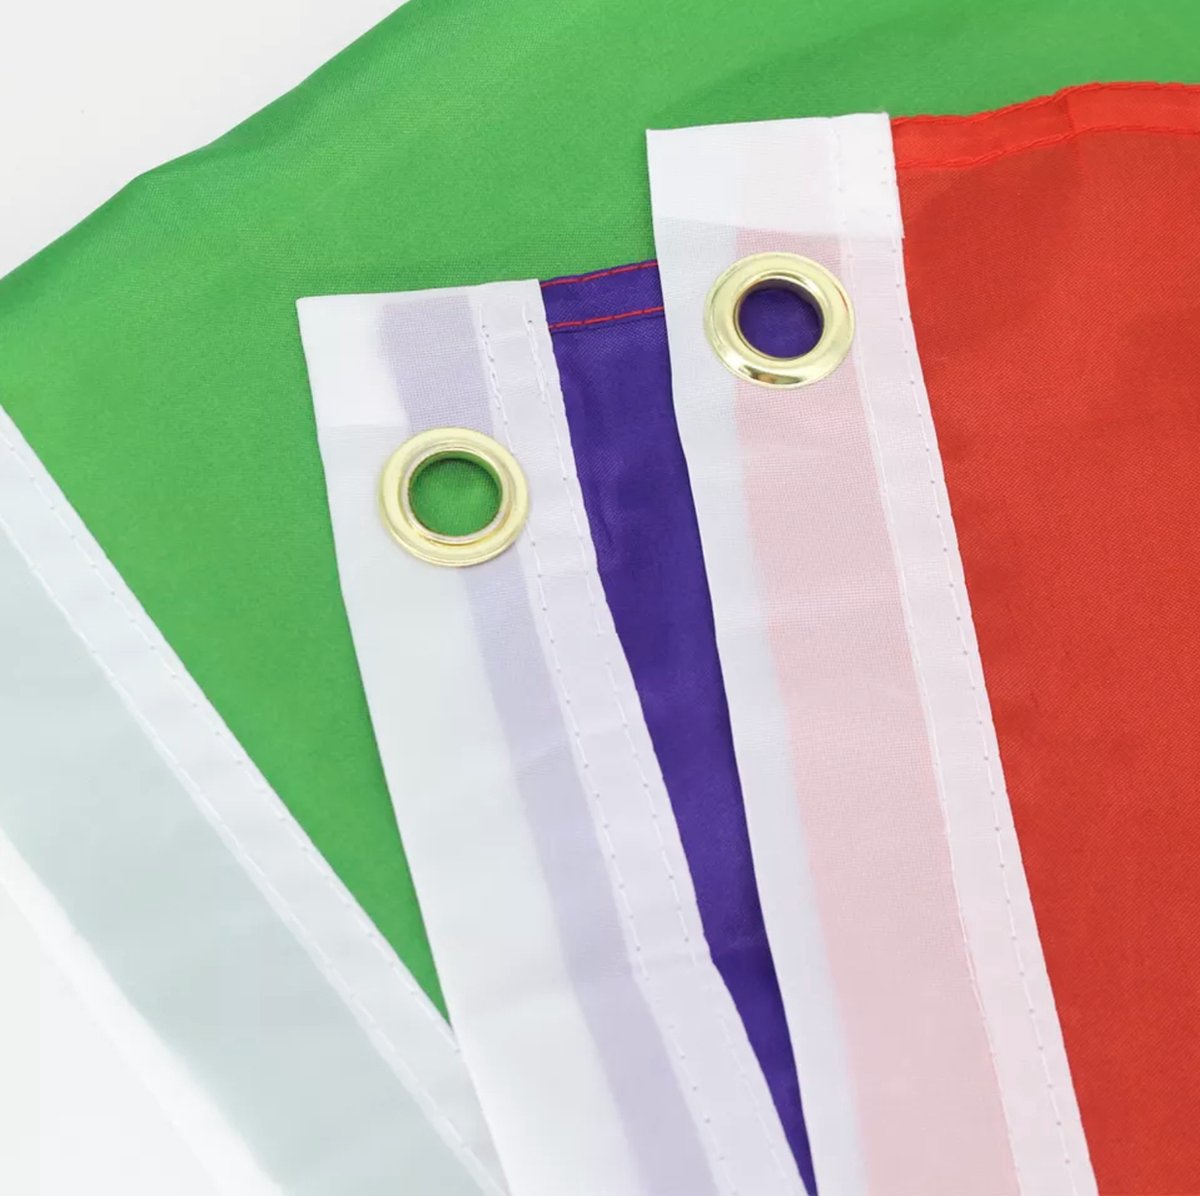 Grand Drapeau Rainbow (Rainbow Flag) Drapeaux LGBTQIA+